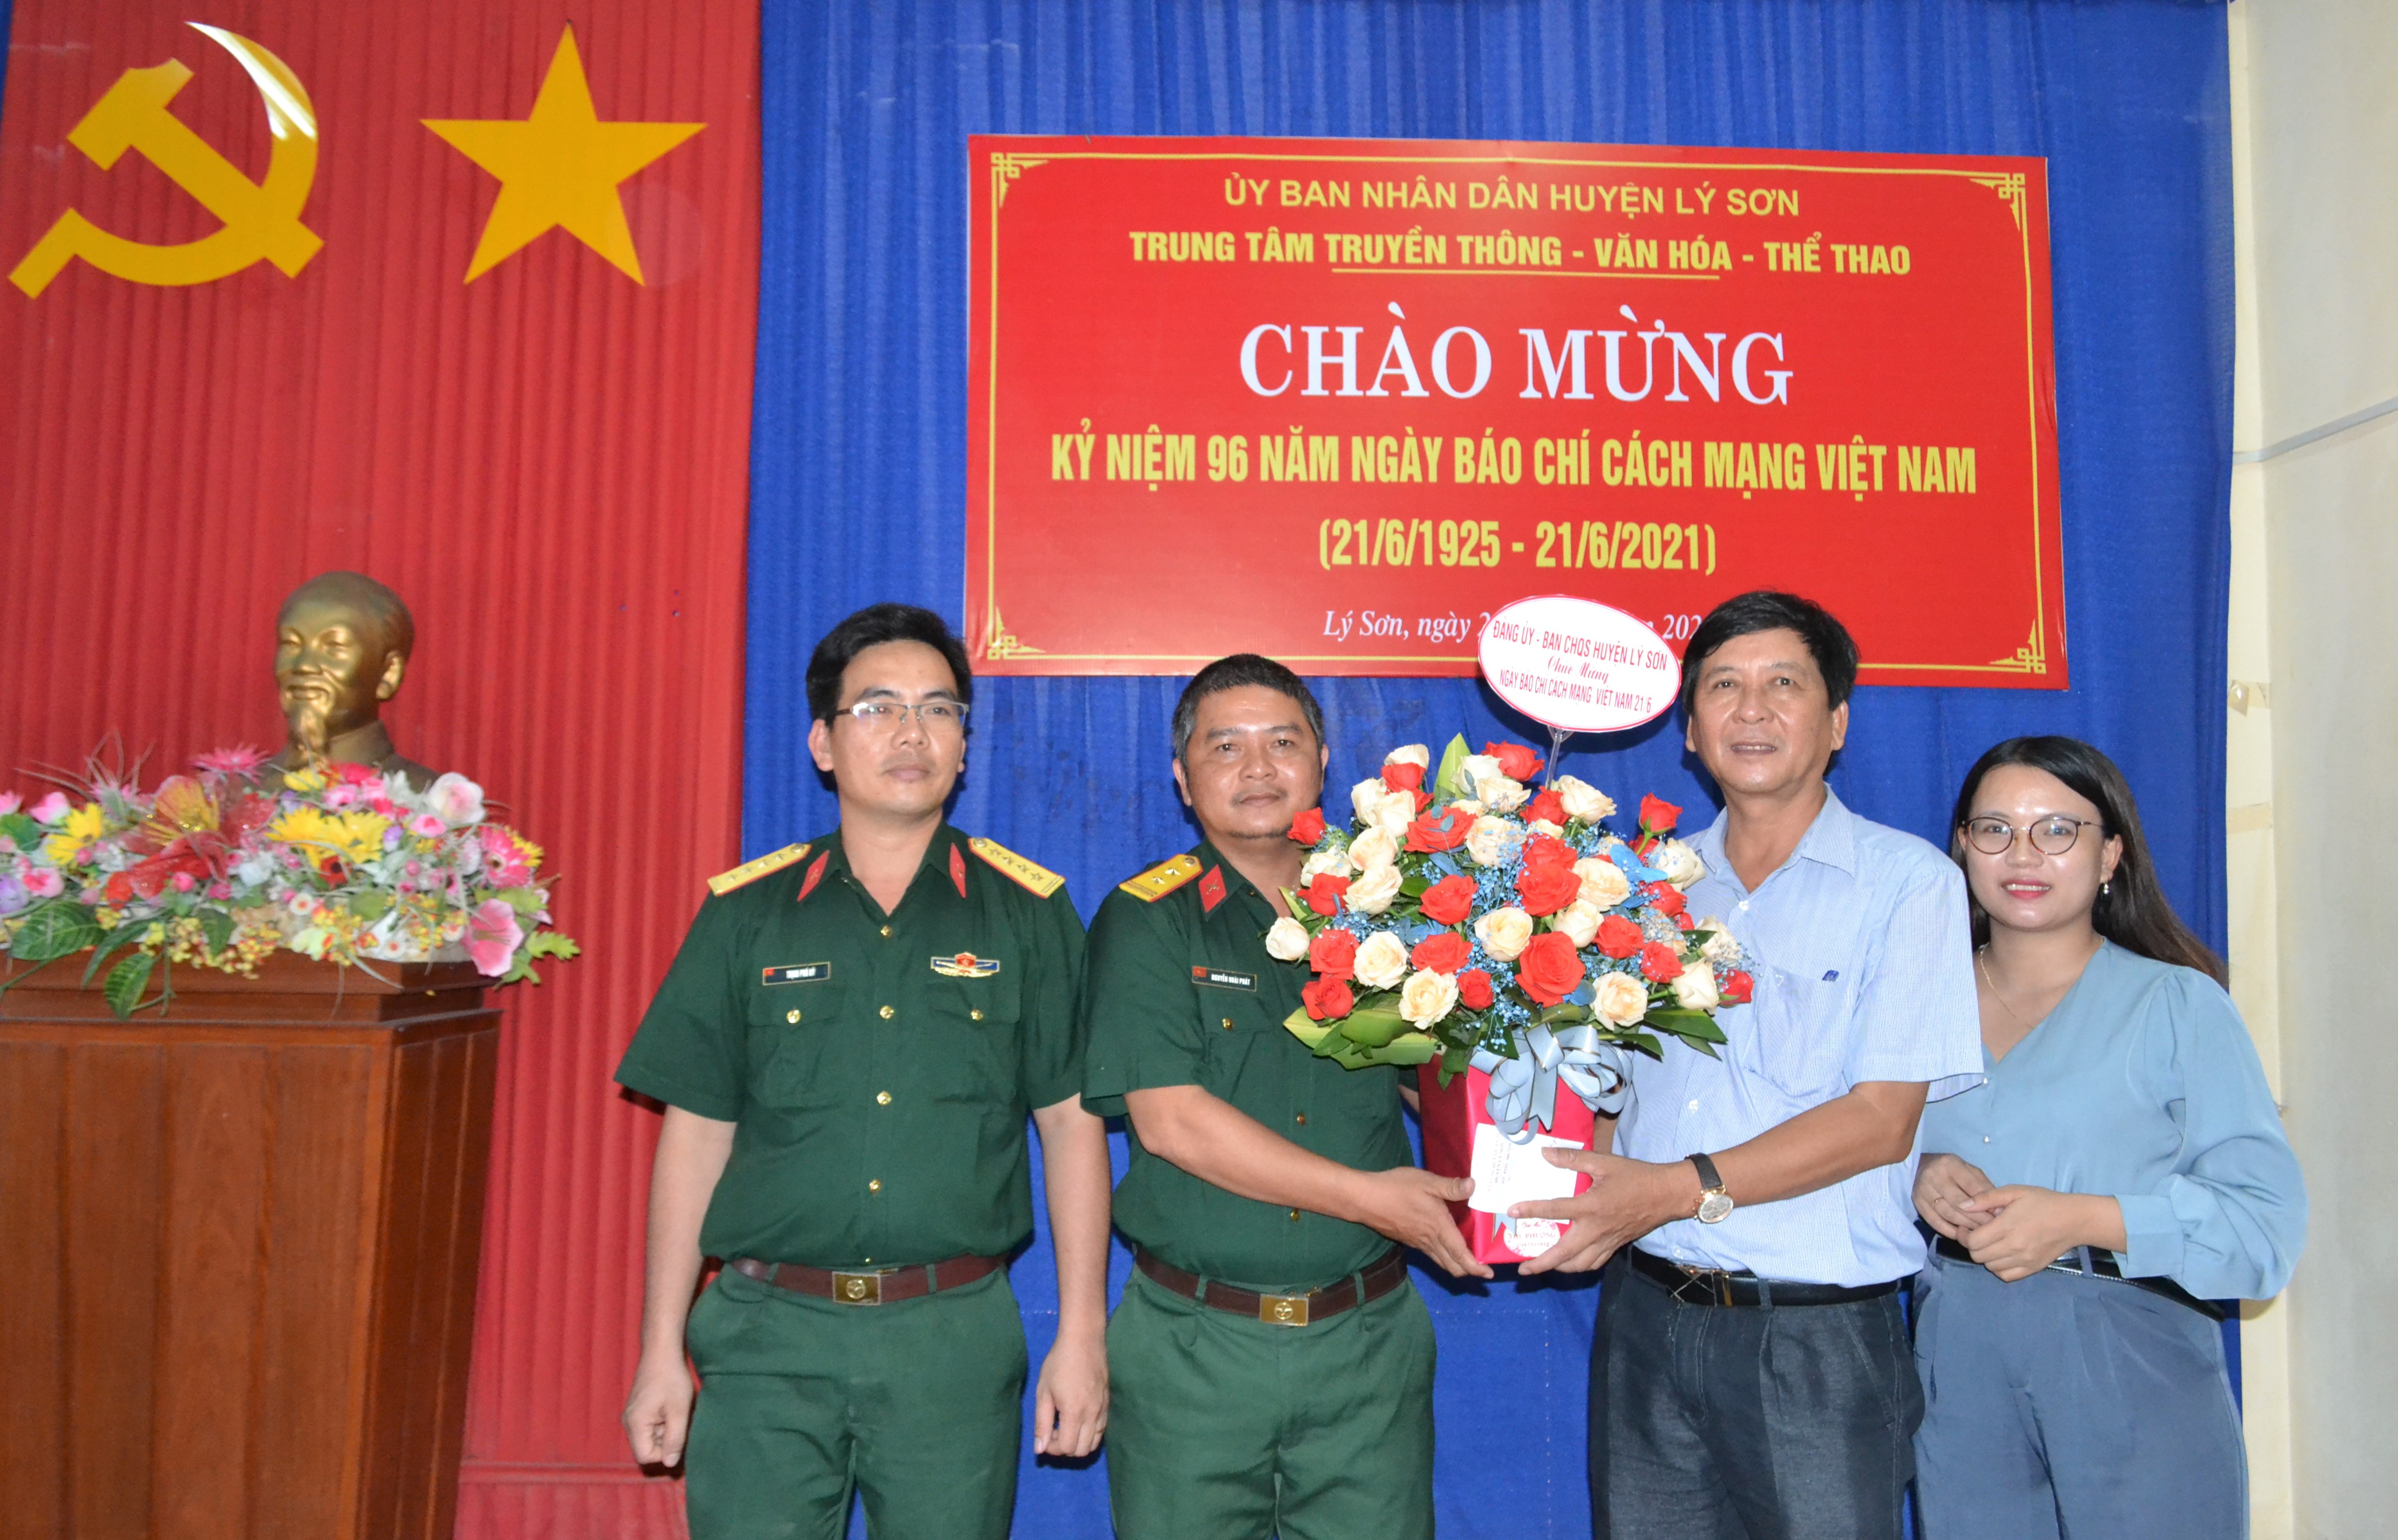 Lãnh đạo huyện và các cơ quan thăm, chúc mừng Ngày báo chí cách mạng Việt Nam